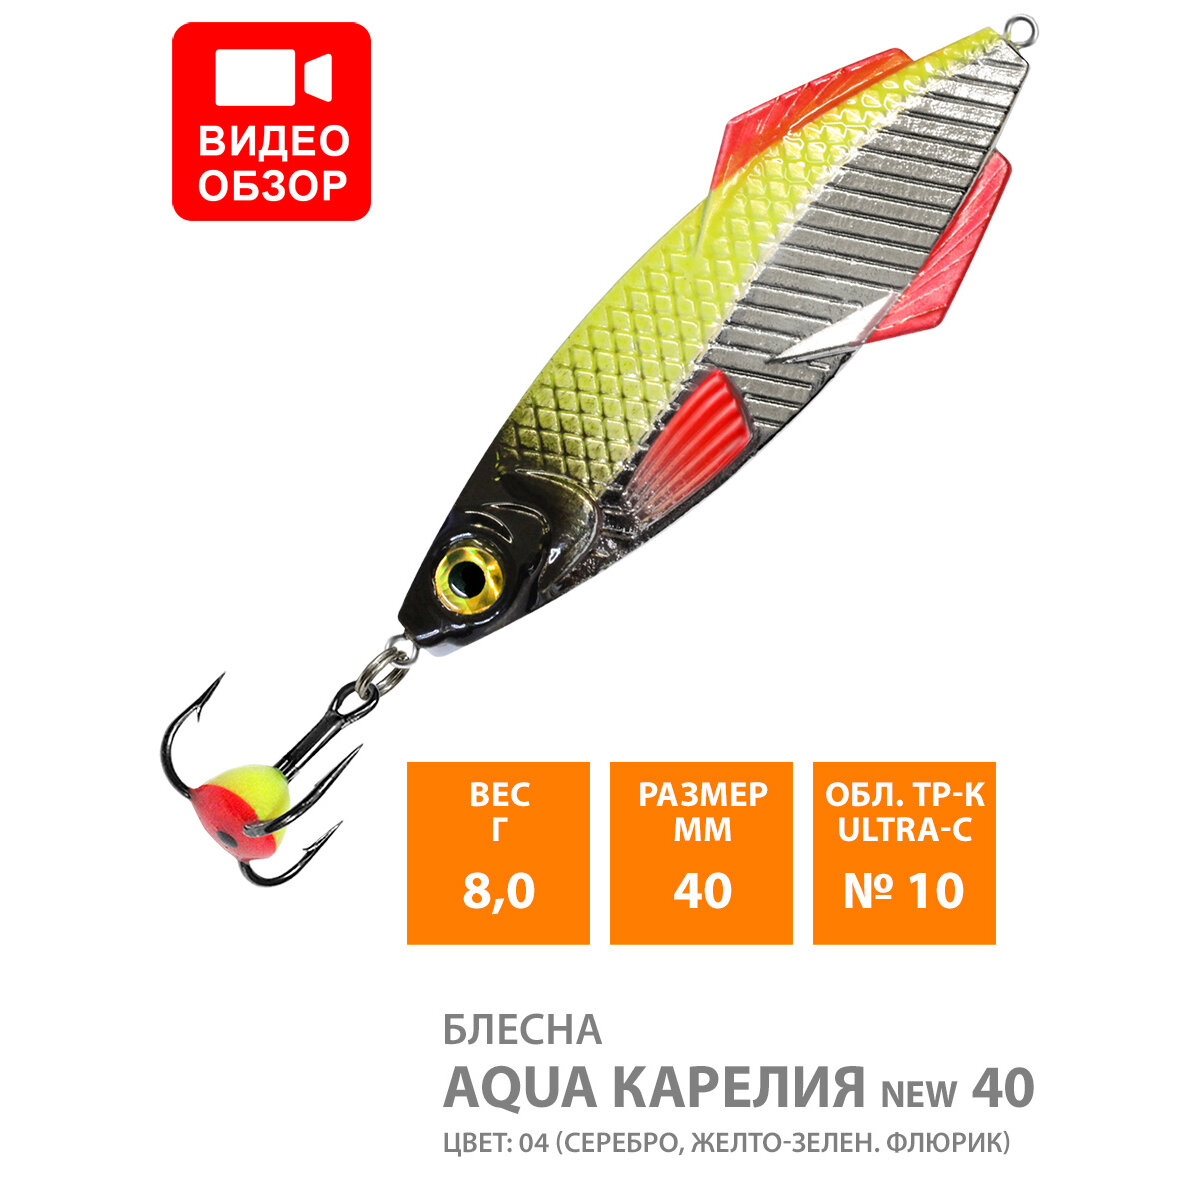 Блесна зимняя для рыбалки AQUA карелия NEW 360g цвет 06 (серебристо-черный) (набор 2 шт)